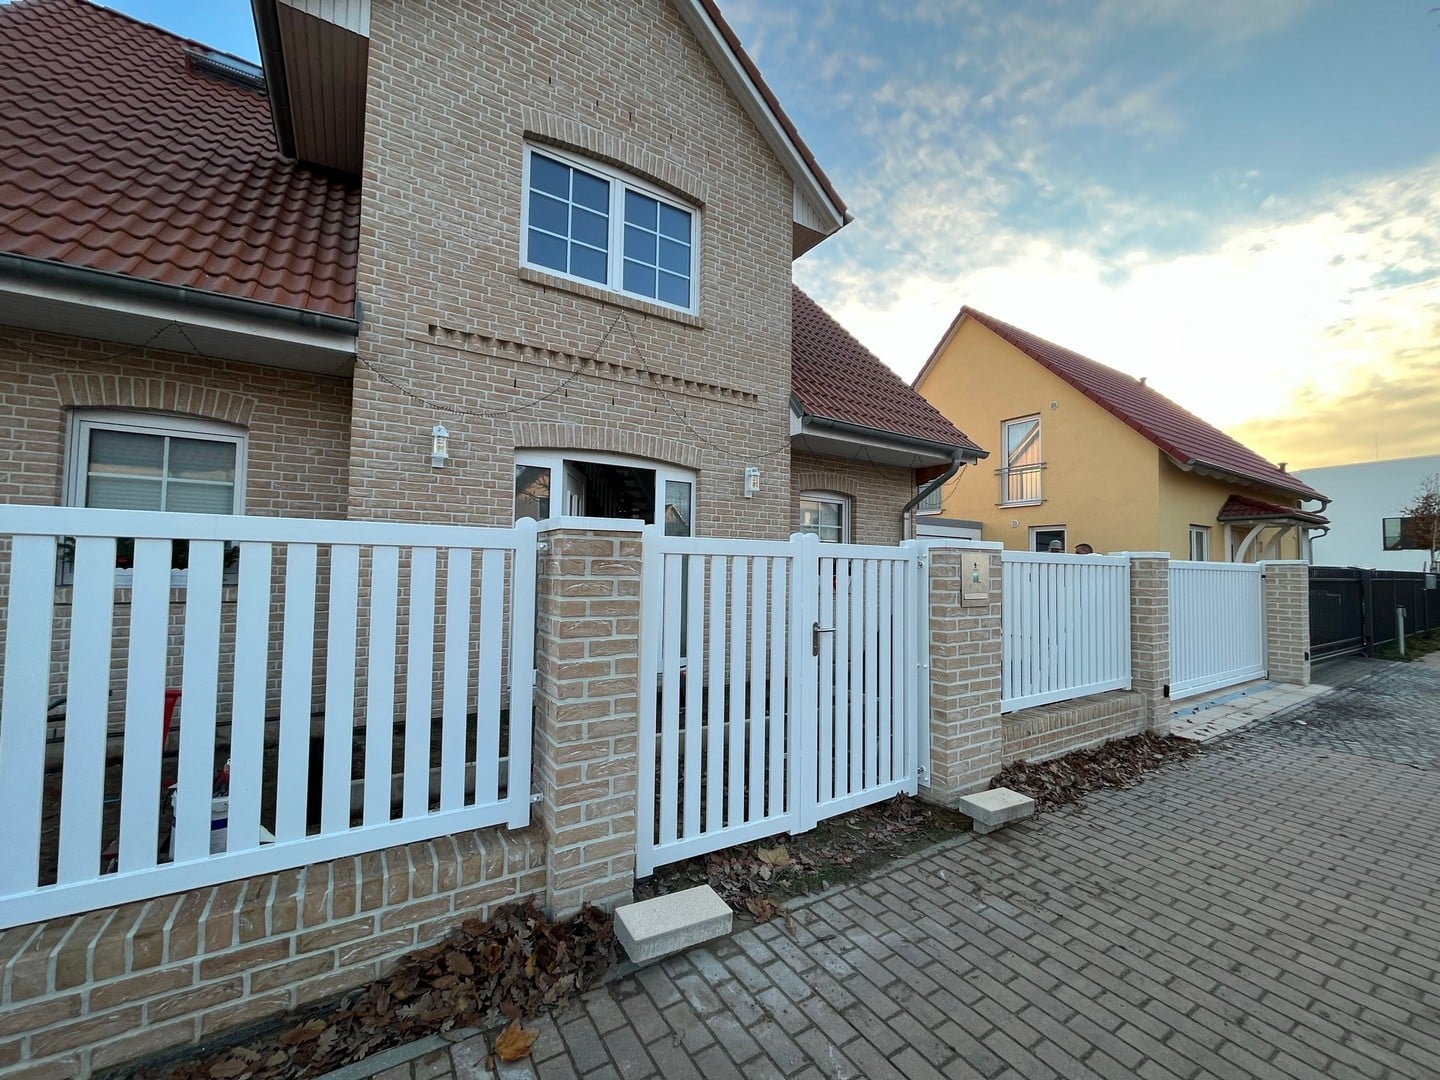 Einfamilienhaus mit Ziegelsteinfassade und weißem Zaun.